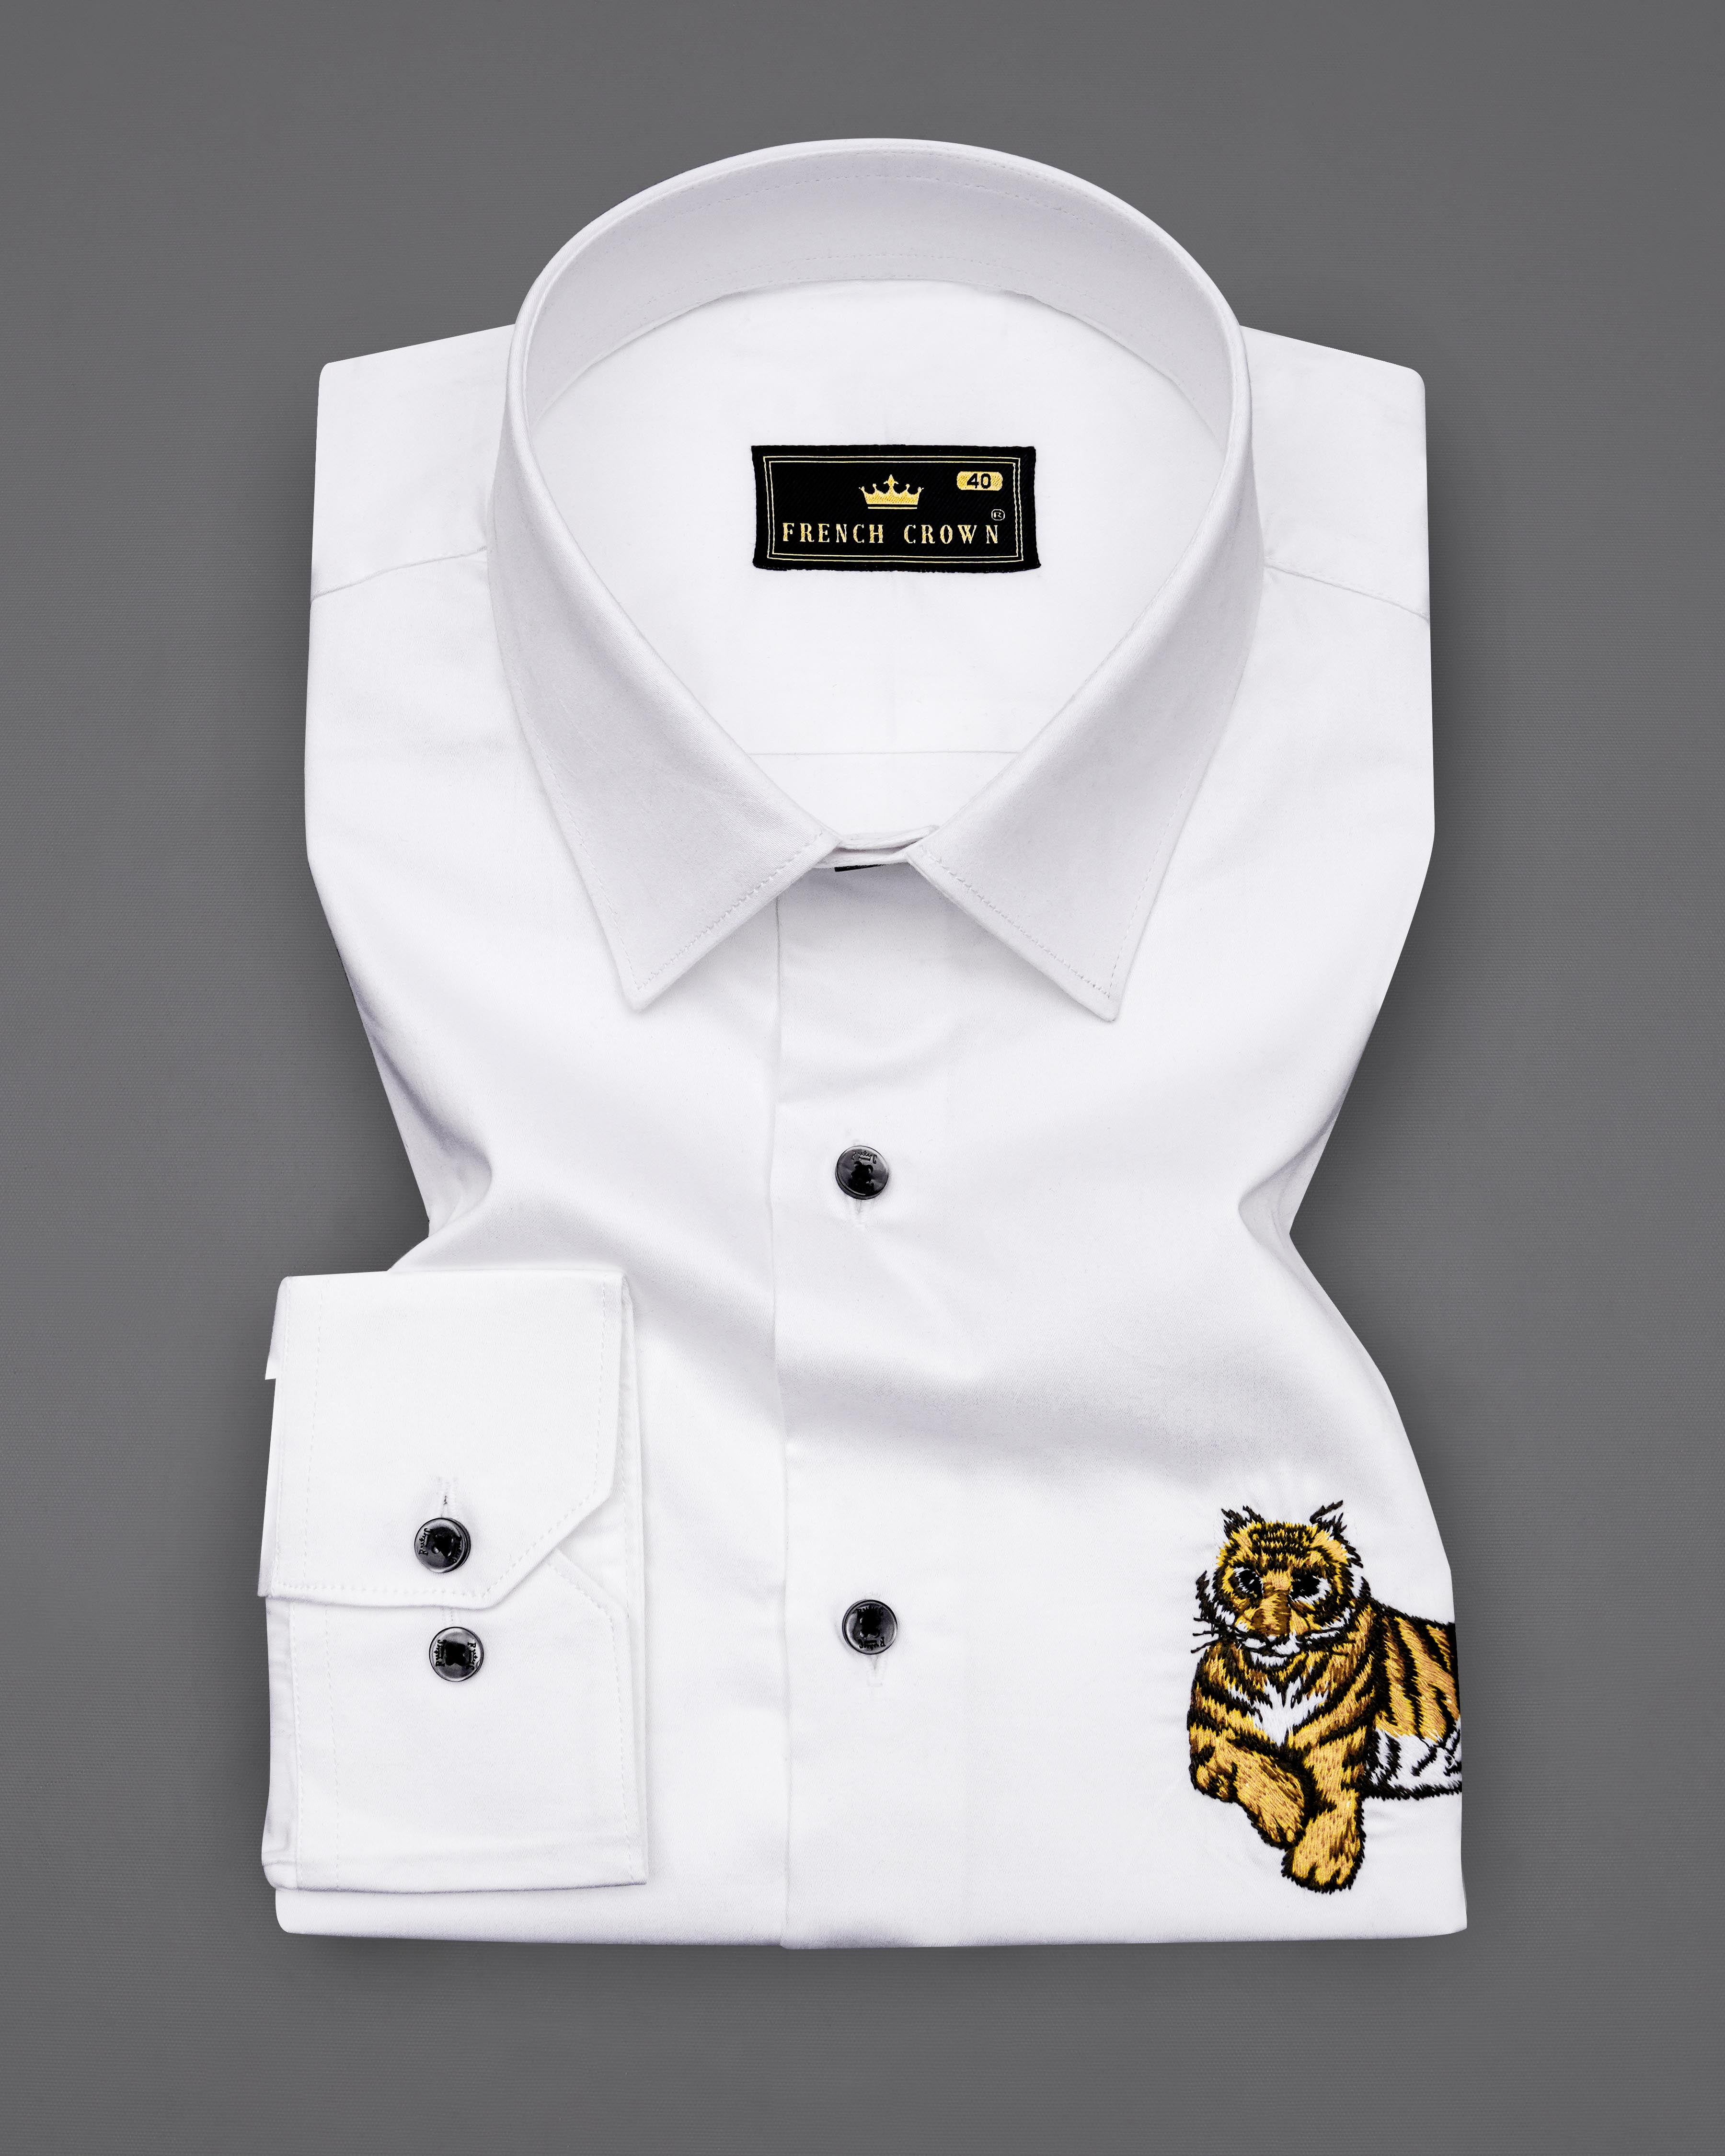 Bright White Subtle Sheen Tiger Cub Embroidered Super Soft Premium Cotton Shirt 8230-BLK-P496-38,8230-BLK-P496-H-38,8230-BLK-P496-39,8230-BLK-P496-H-39,8230-BLK-P496-40,8230-BLK-P496-H-40,8230-BLK-P496-42,8230-BLK-P496-H-42,8230-BLK-P496-44,8230-BLK-P496-H-44,8230-BLK-P496-46,8230-BLK-P496-H-46,8230-BLK-P496-48,8230-BLK-P496-H-48,8230-BLK-P496-50,8230-BLK-P496-H-50,8230-BLK-P496-52,8230-BLK-P496-H-52